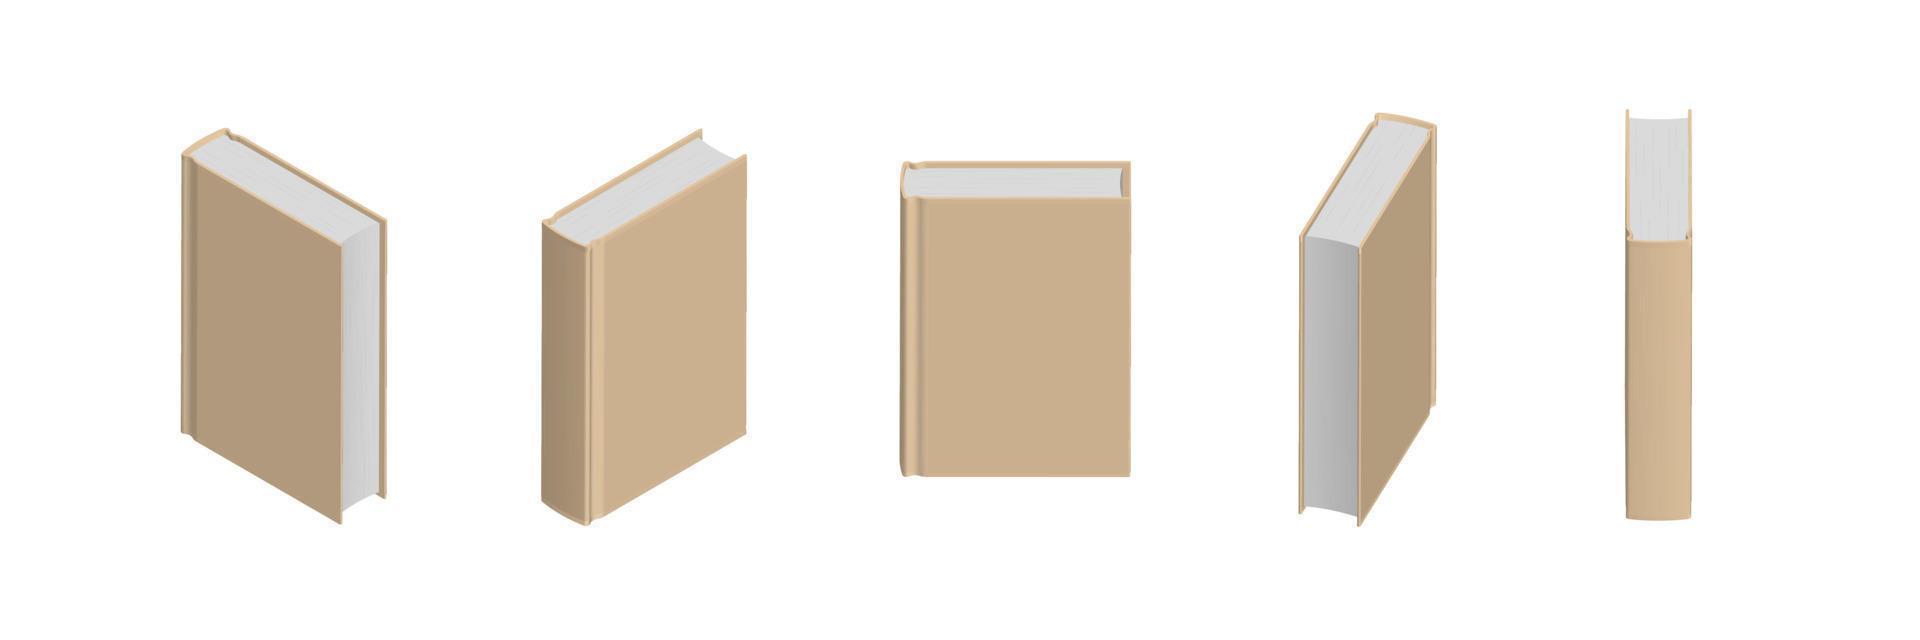 conjunto de livros bege fechados em diferentes posições para livraria vetor